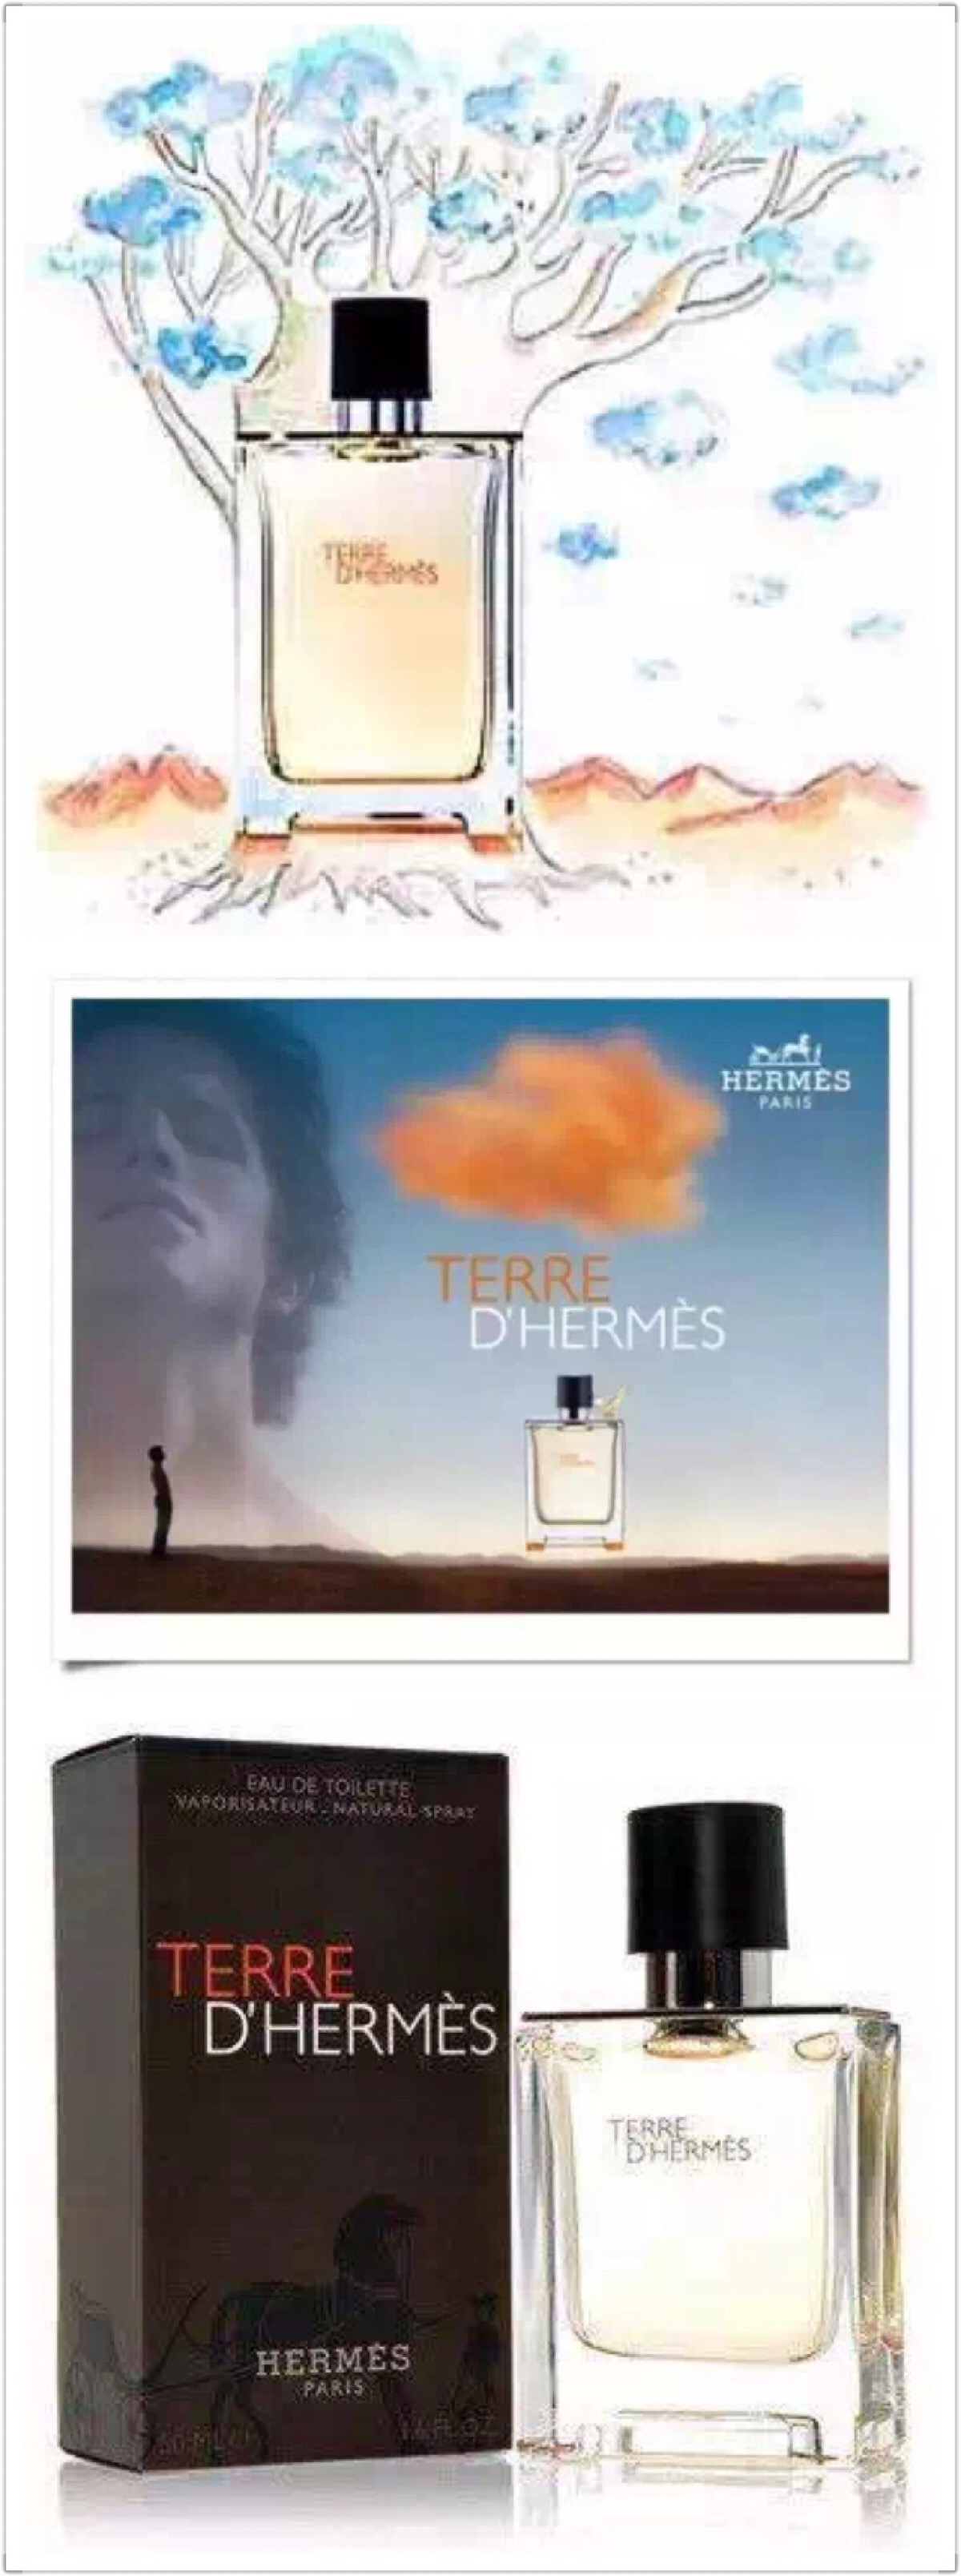 爱马仕大地香水广告图片